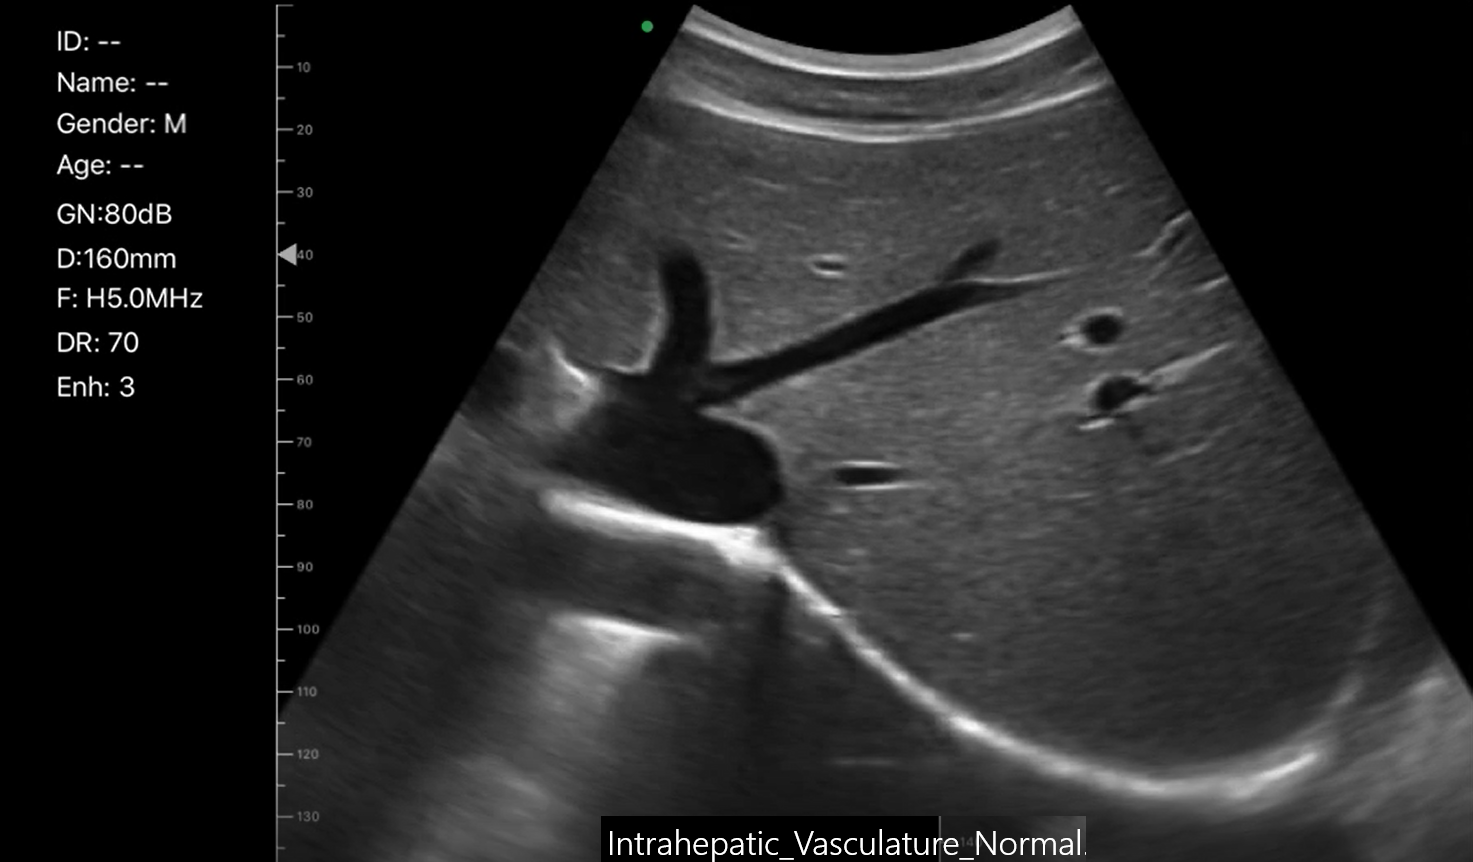 Intrahepatic Vasculature Normal